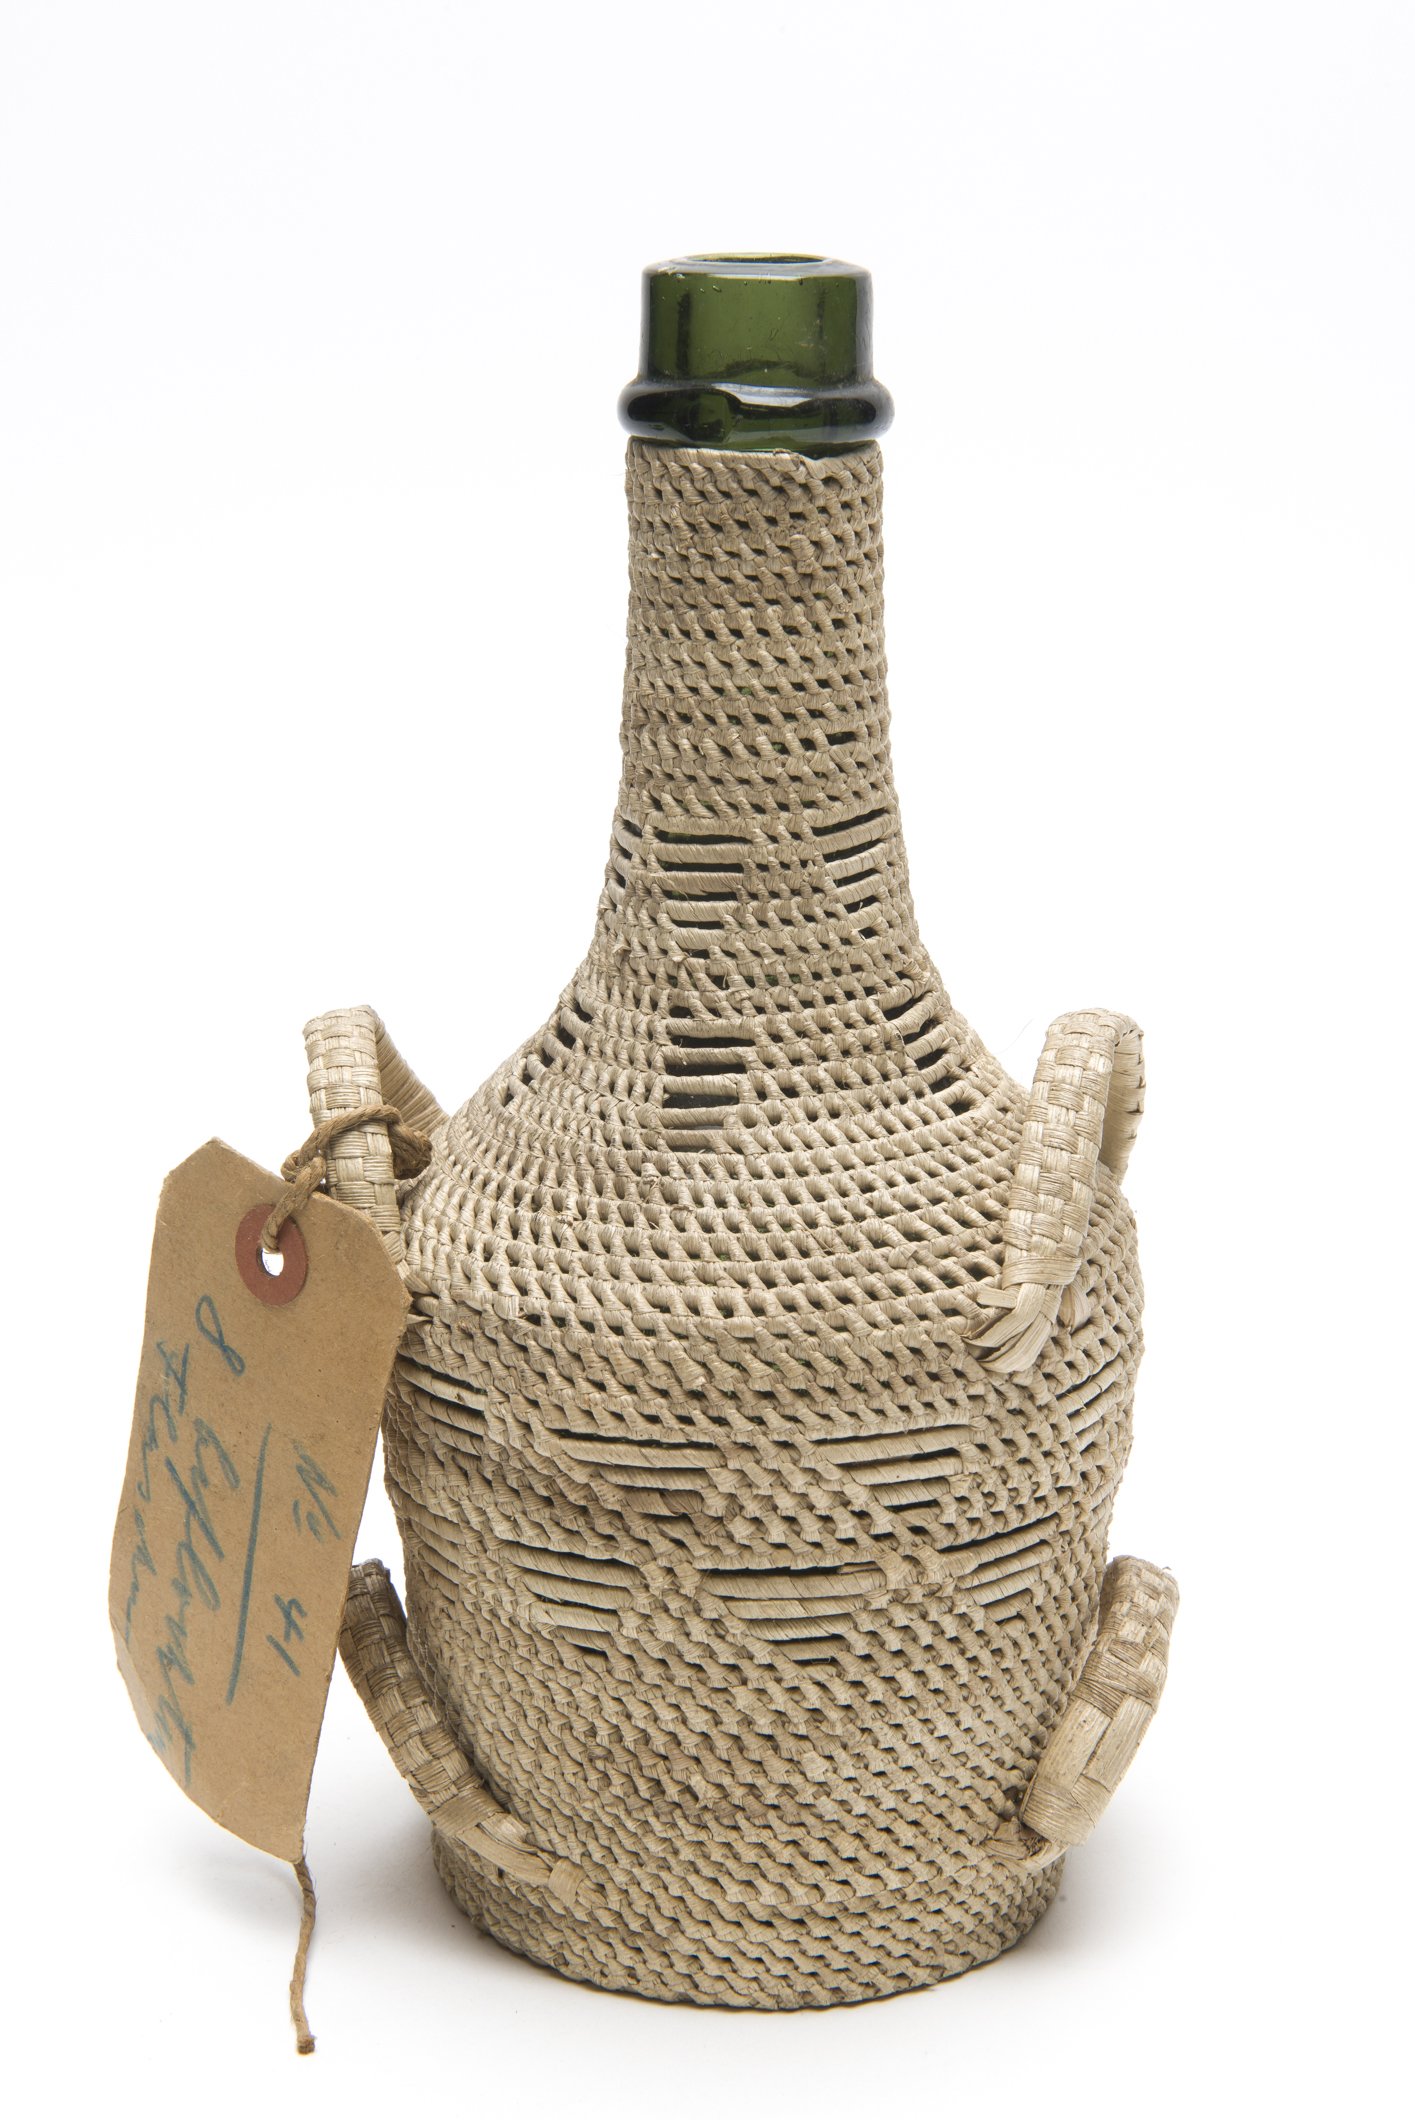 D05514 Flasche im Geflecht | woven bottle (Übersee-Museum Bremen CC BY-SA)